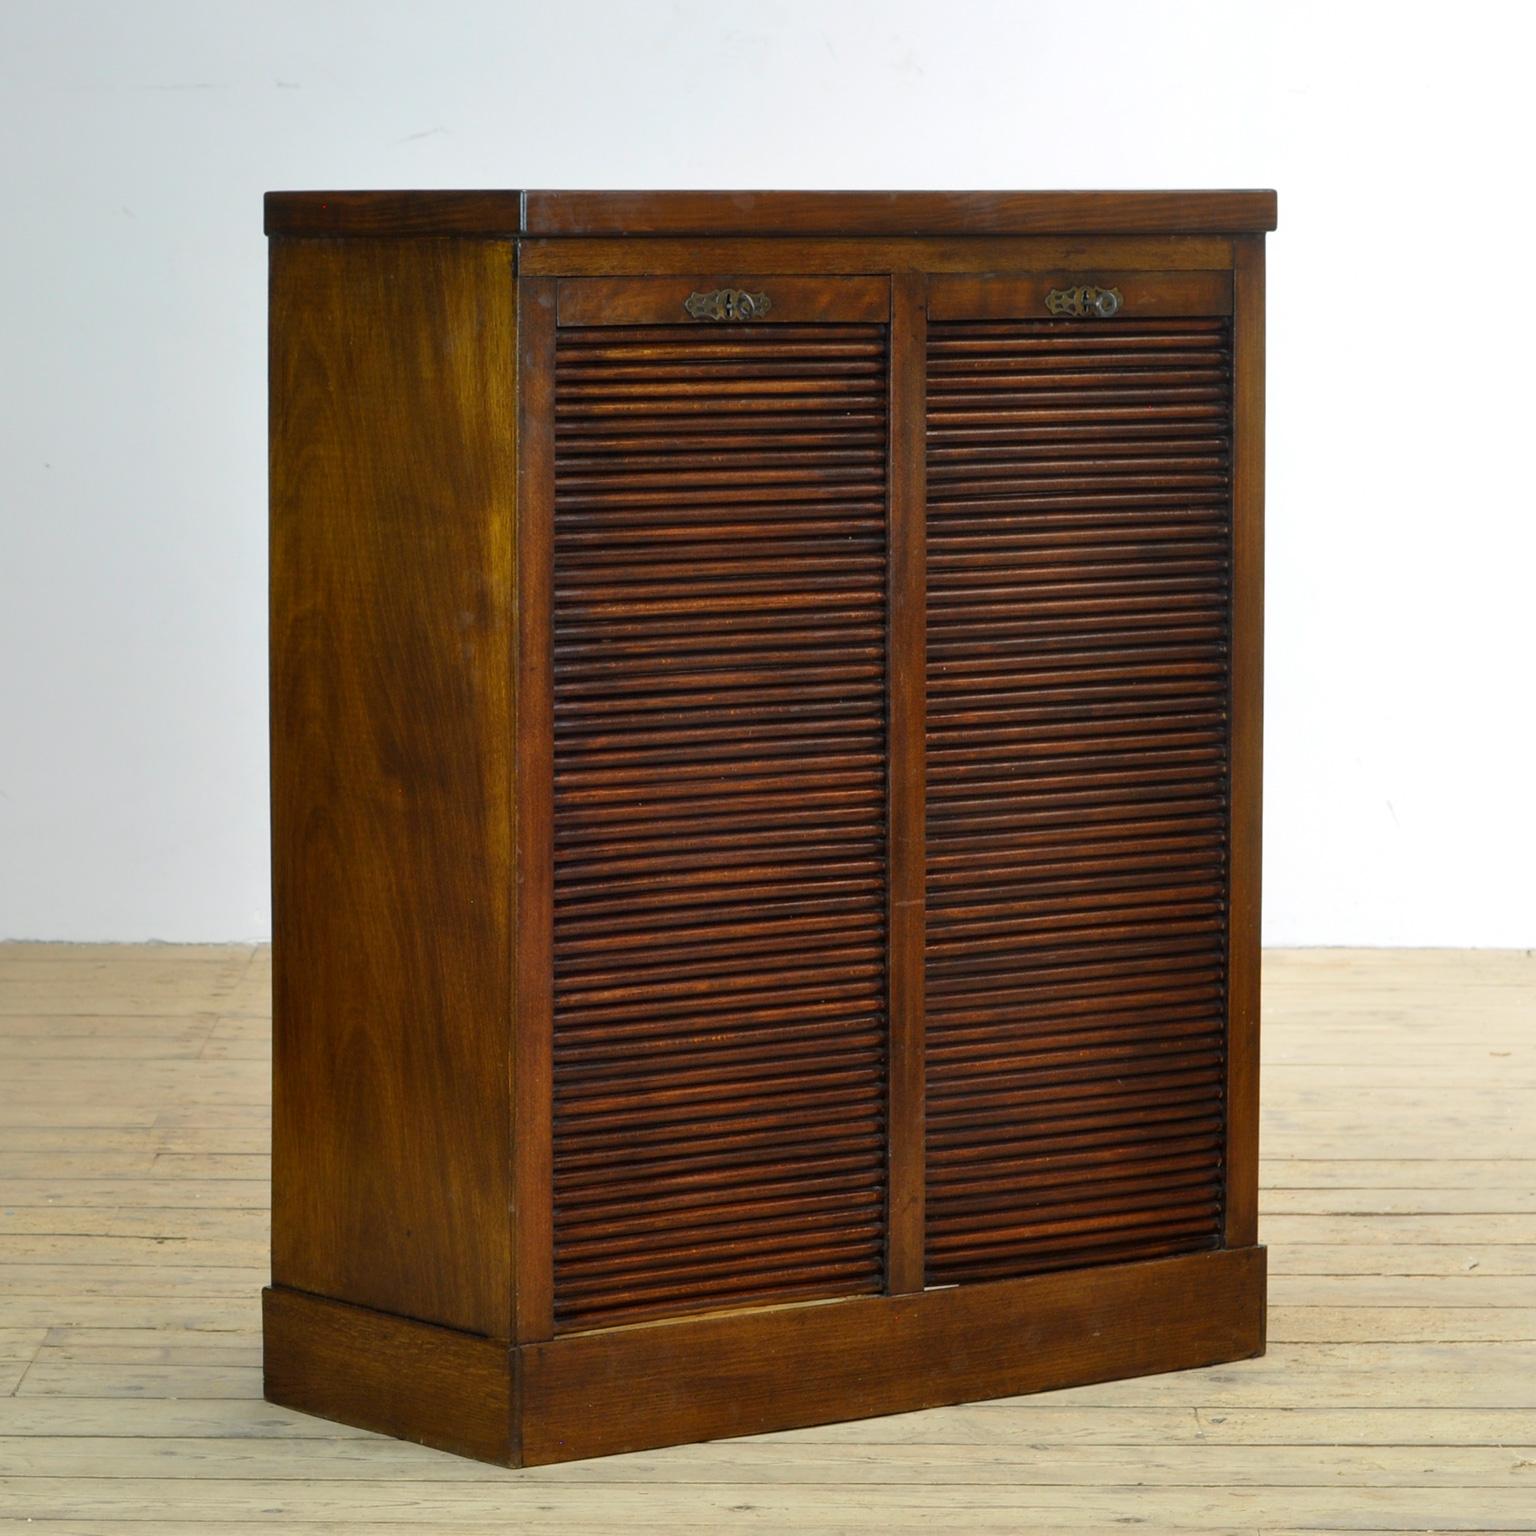 Industrial Oak Filing Cabinet, 1920s